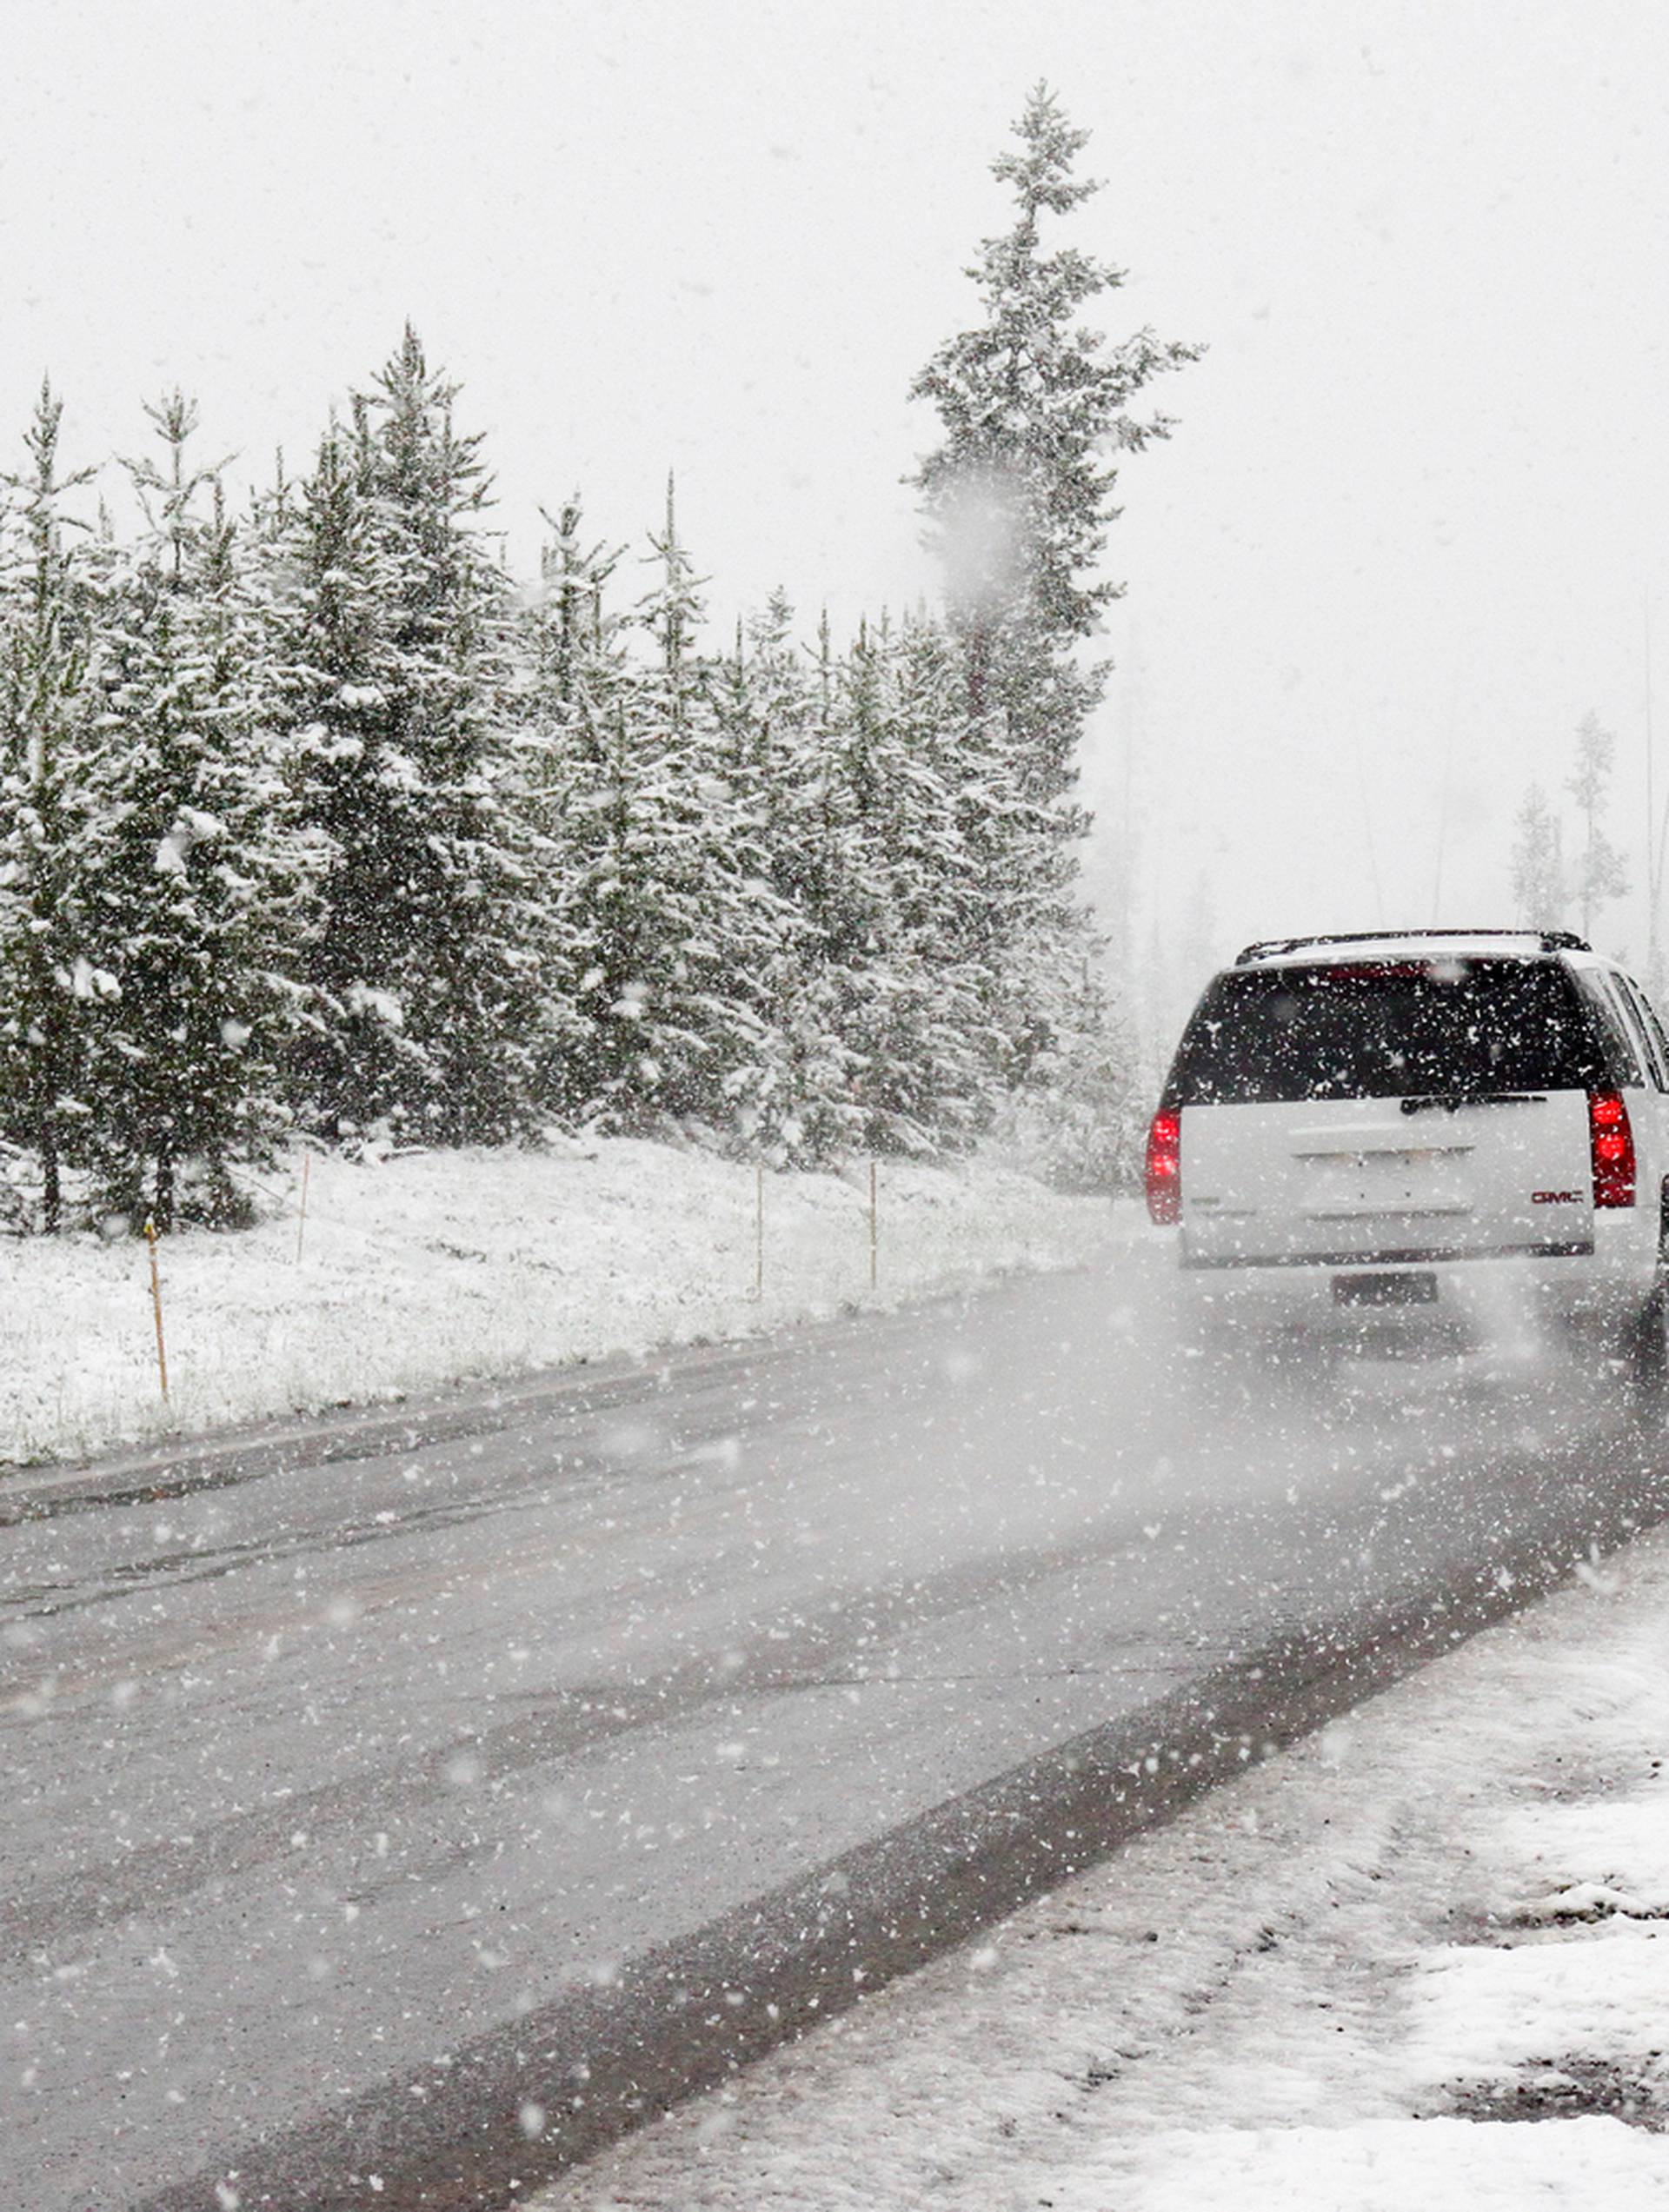 Sve što trebate znati o zimskoj opremi automobila: Mijenjanje, životni vijek i skladištenje guma